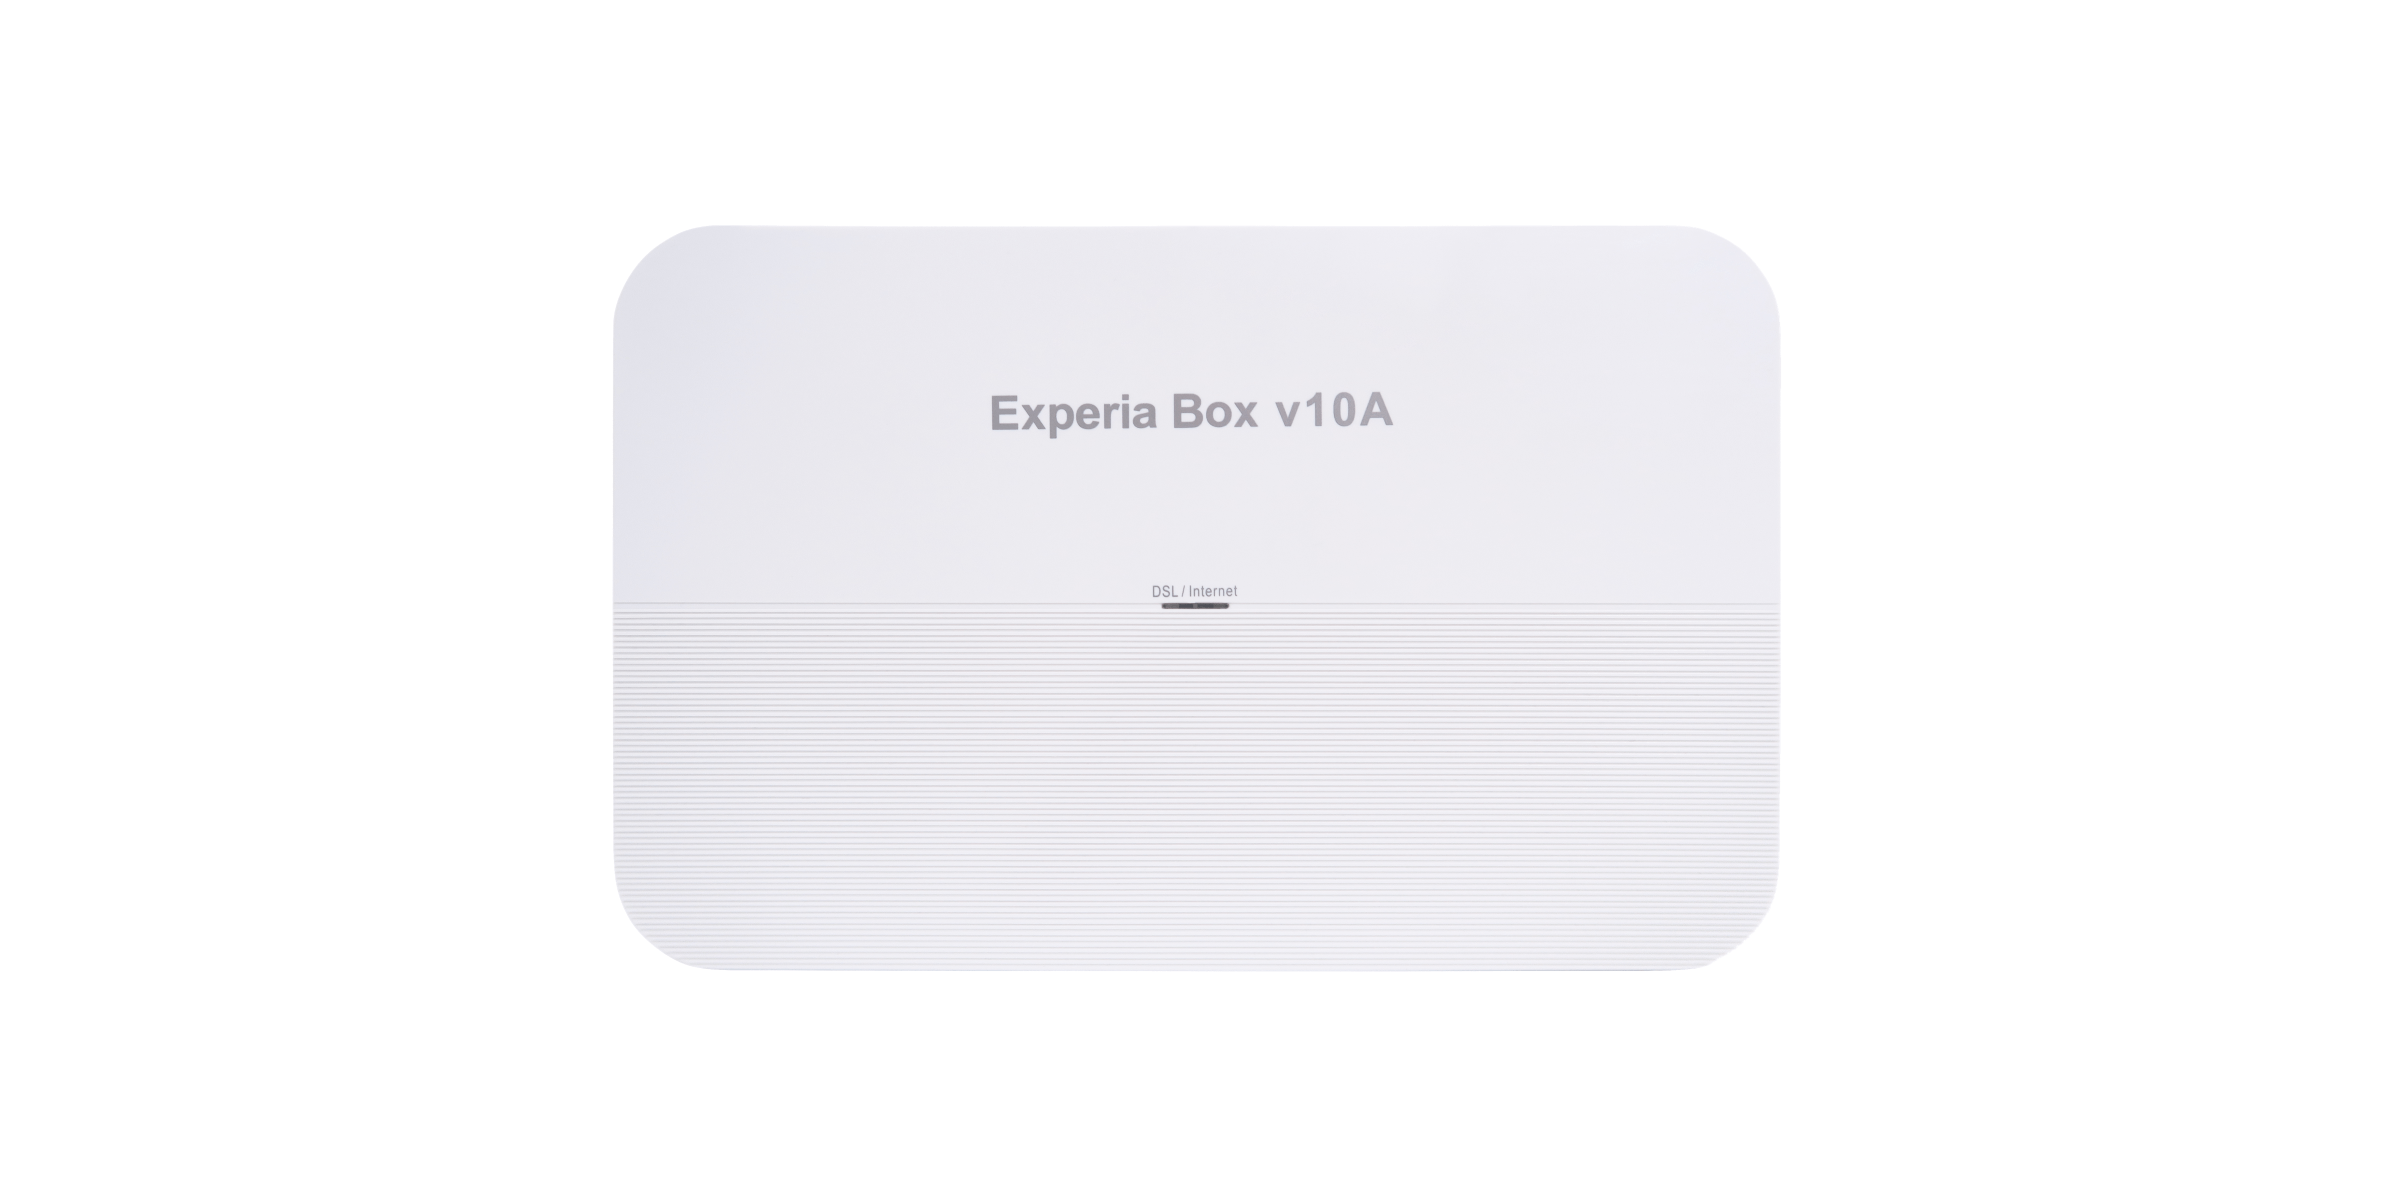 Modem Experia Box V10a